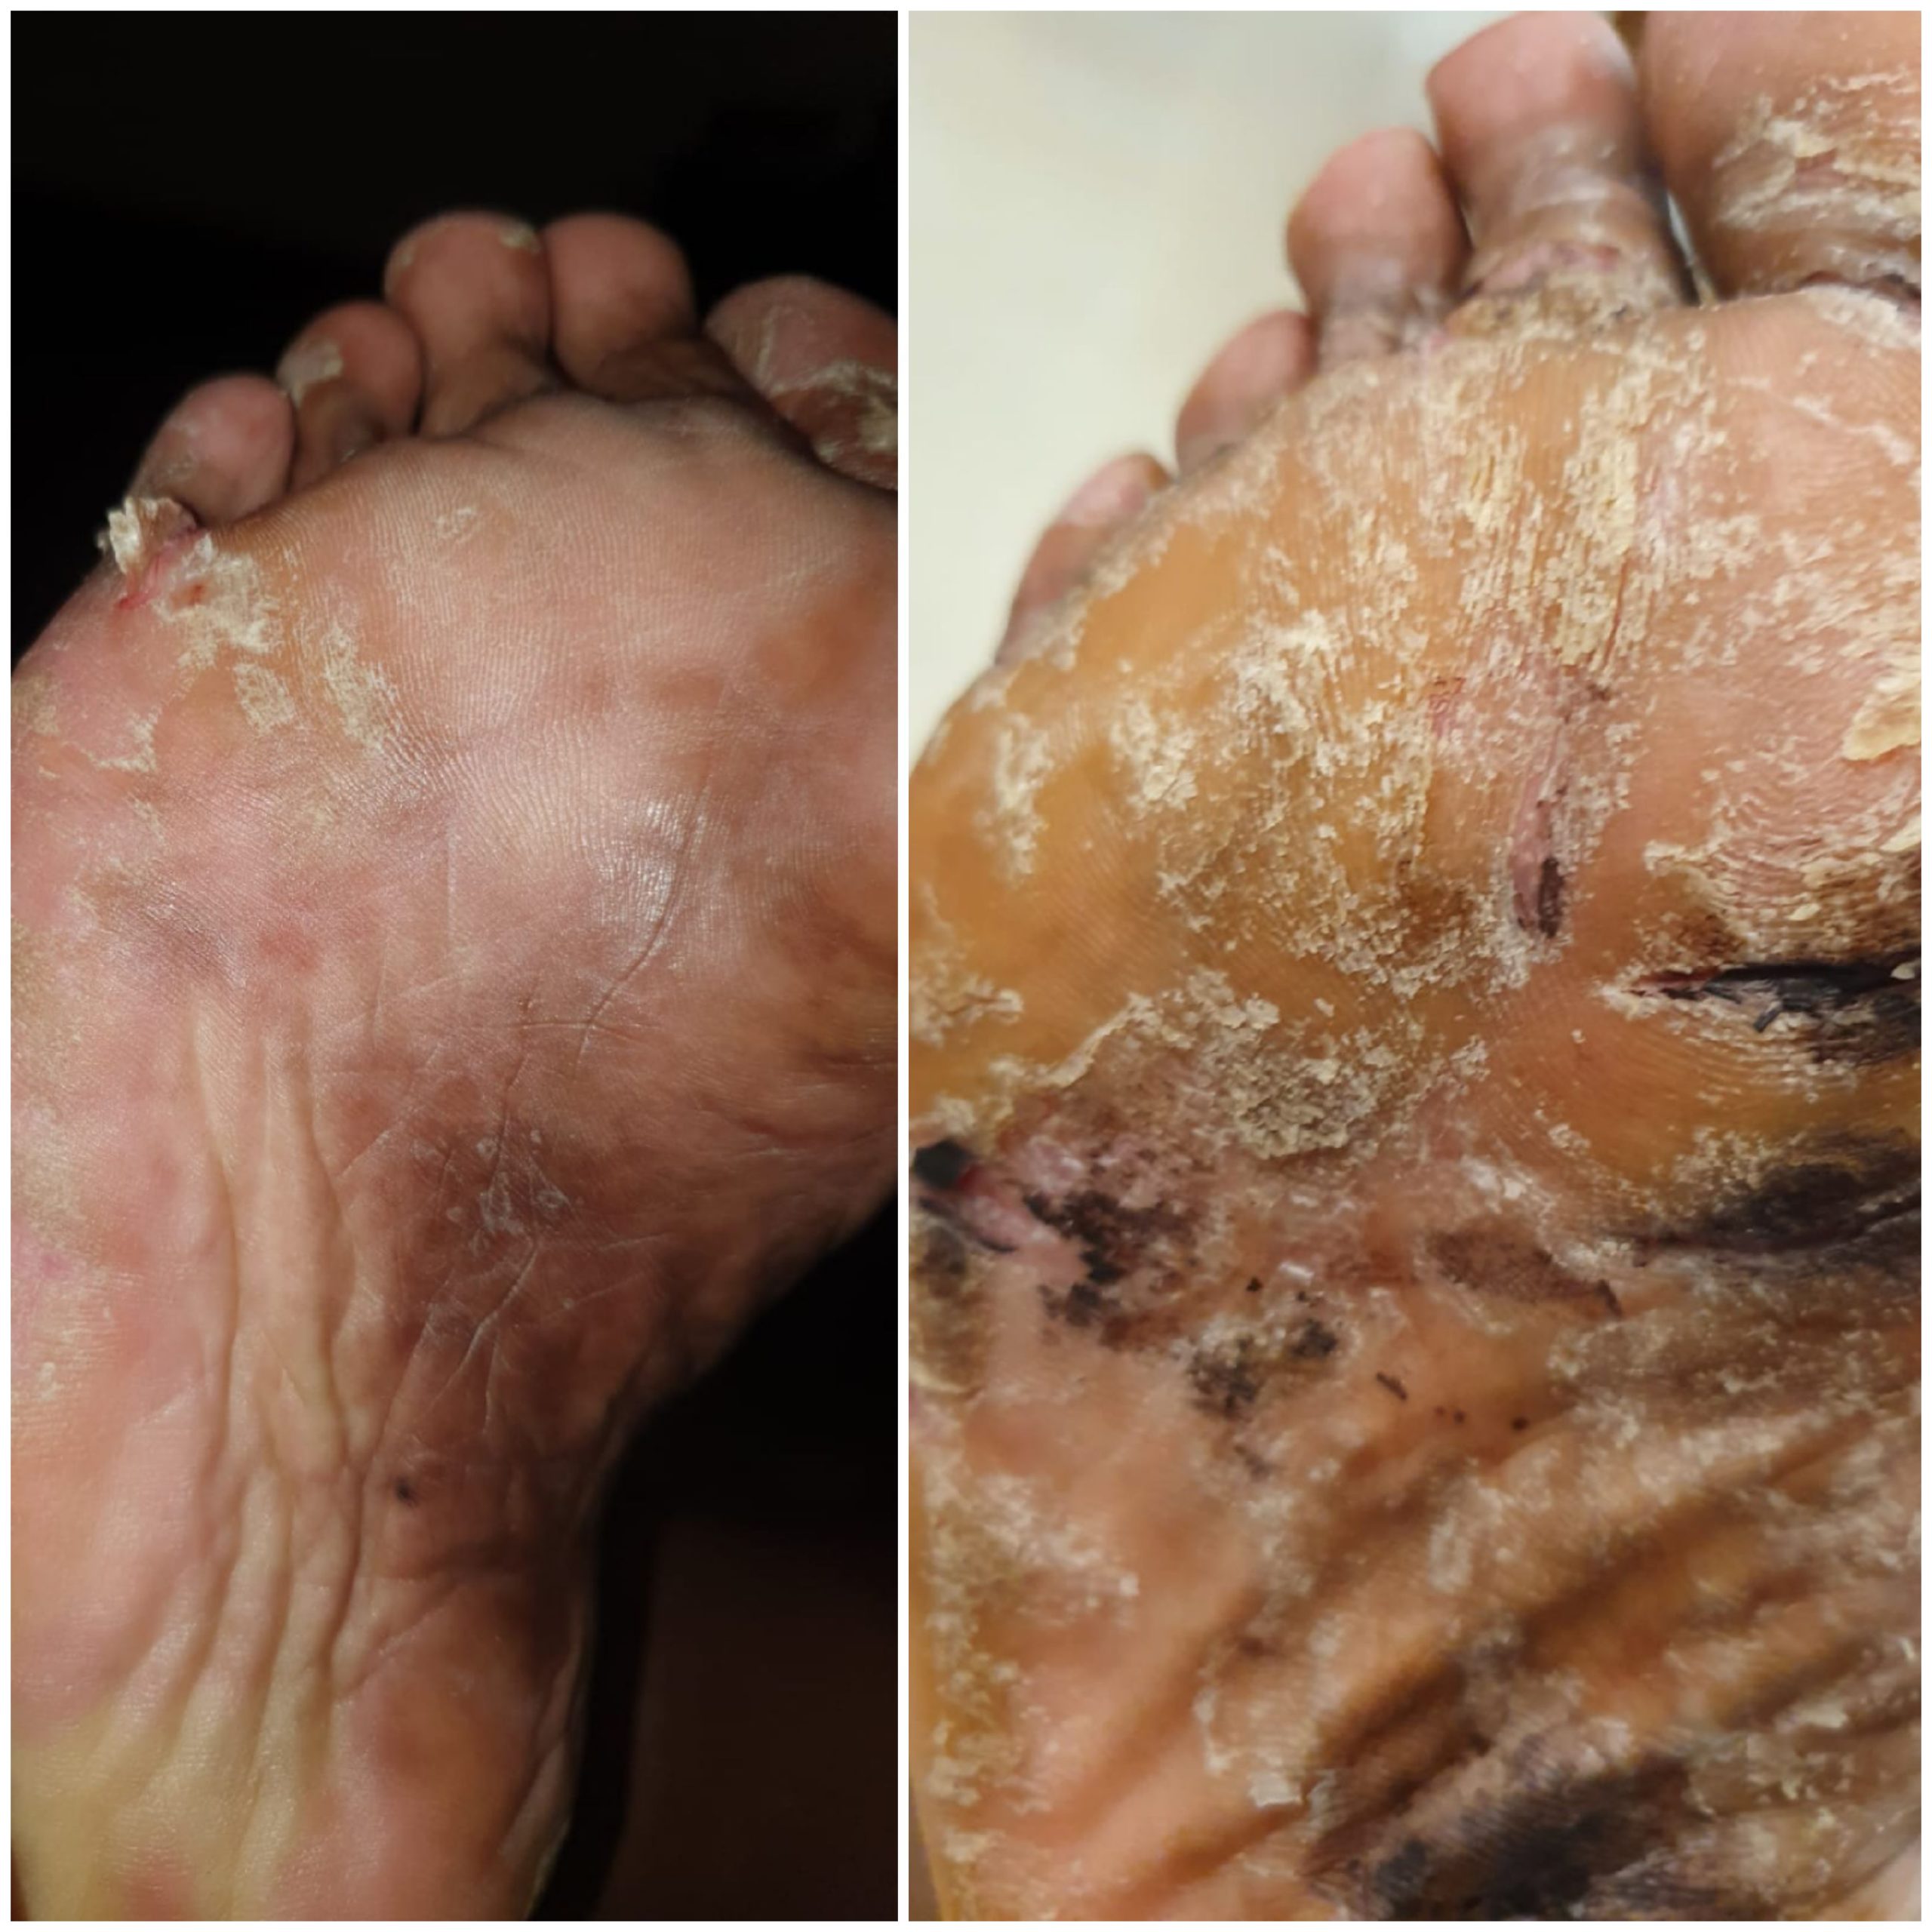 לפני ותוך התהליך פסוריאזיס בכפות הרגליים